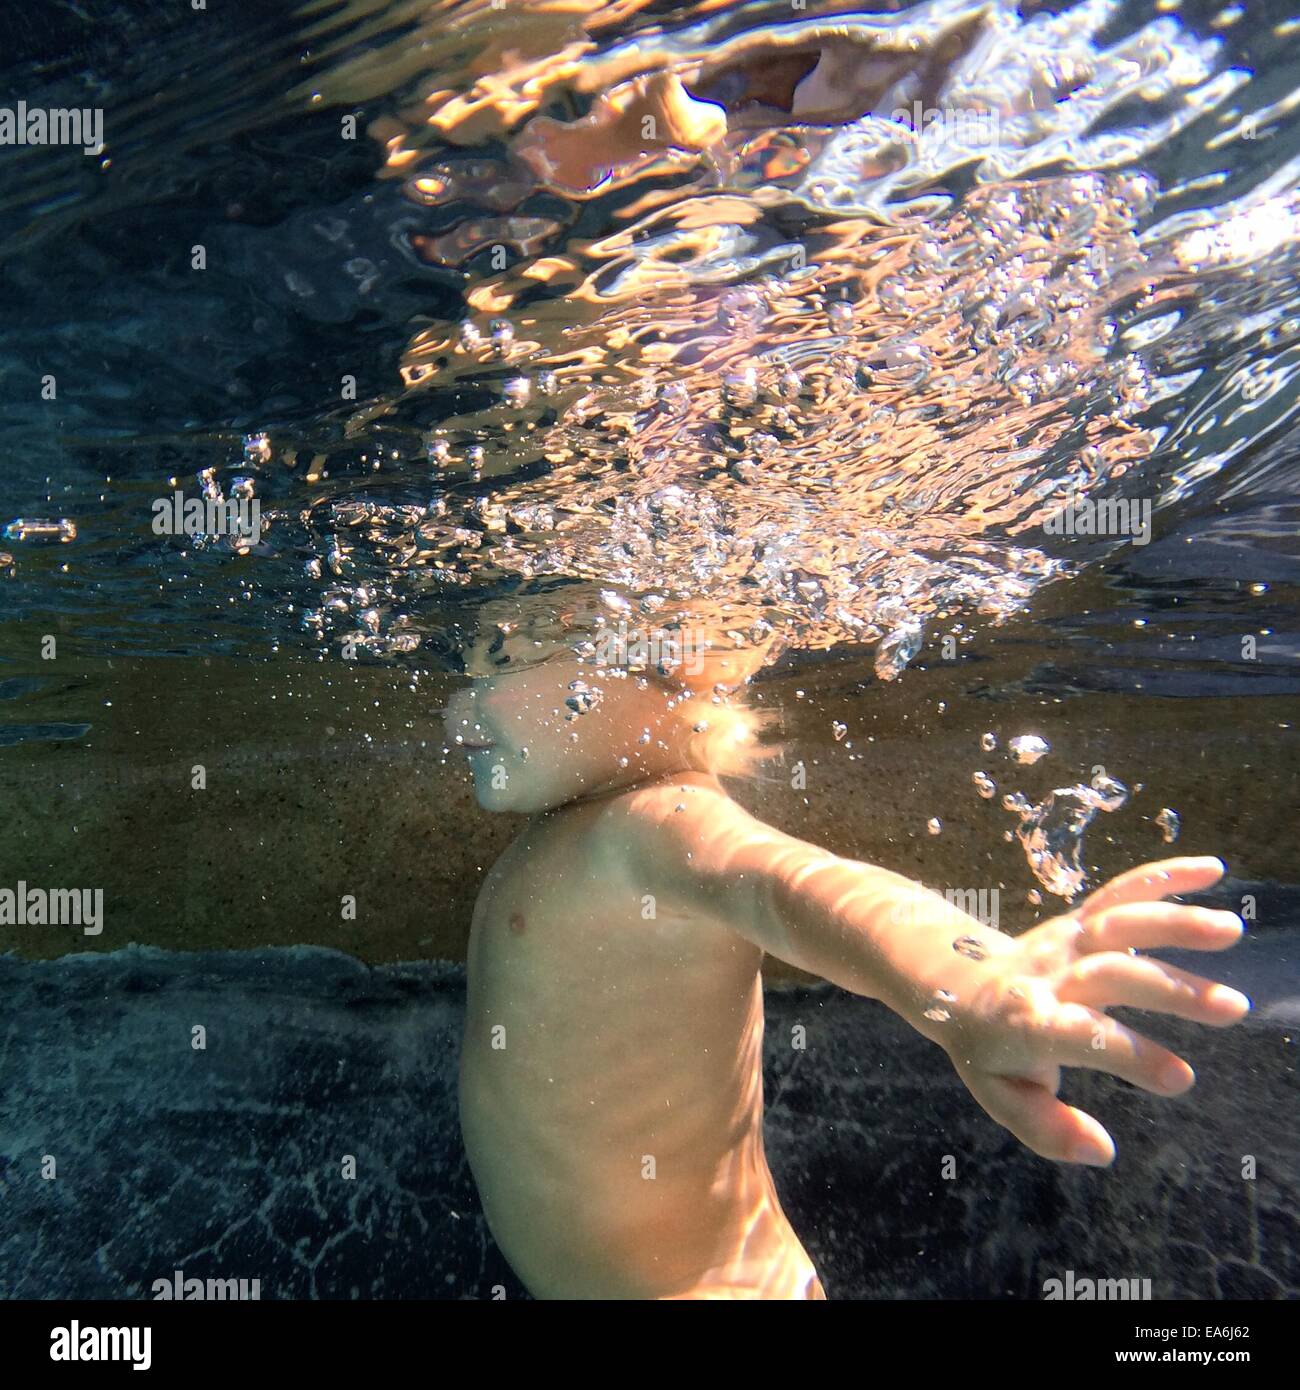 Boy swimming underwater Stock Photo